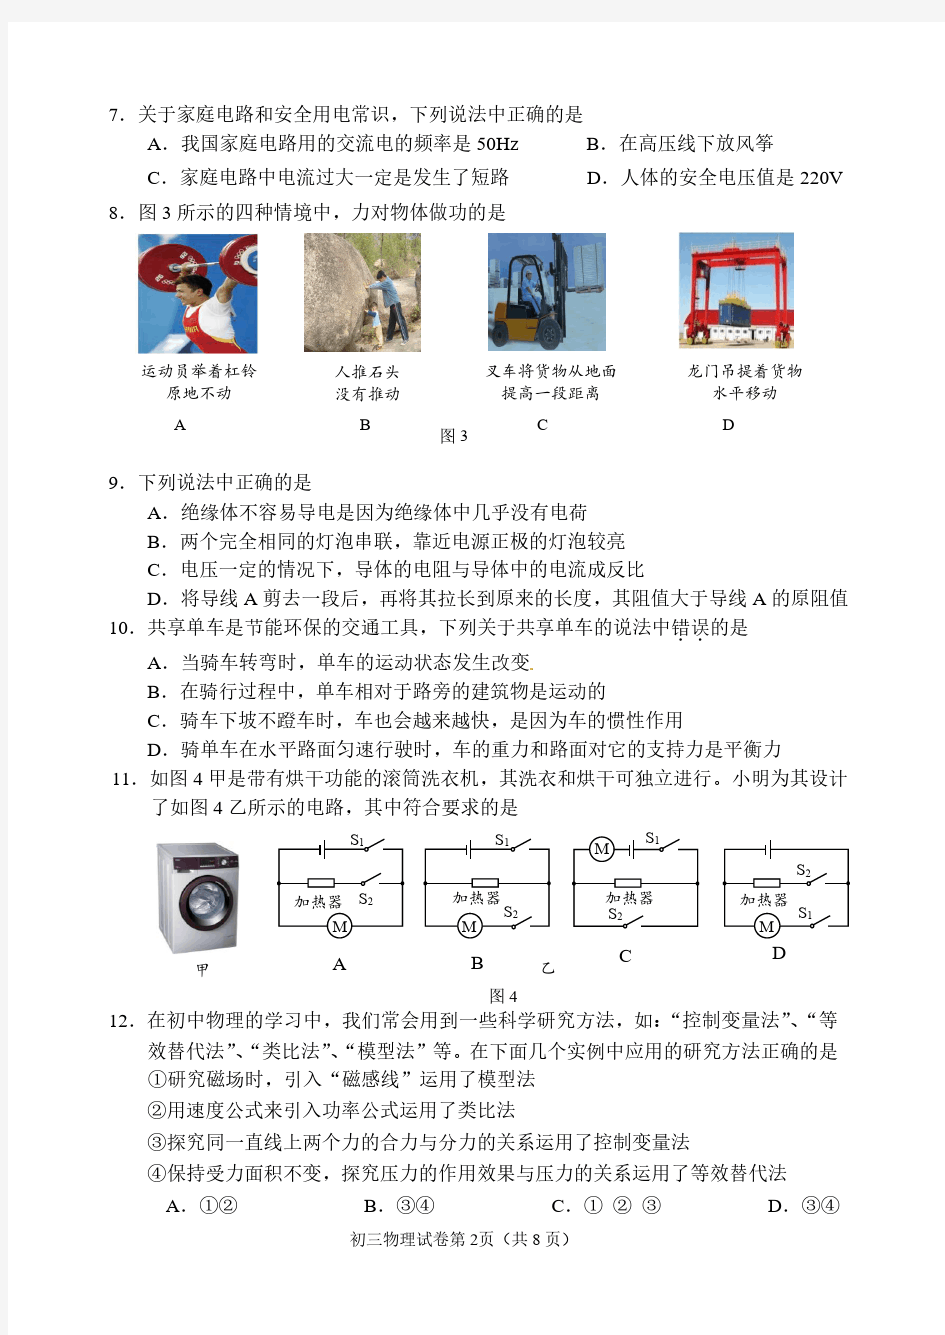 北京石景山区2019年初三中考二模物理试卷(含答案).pdf